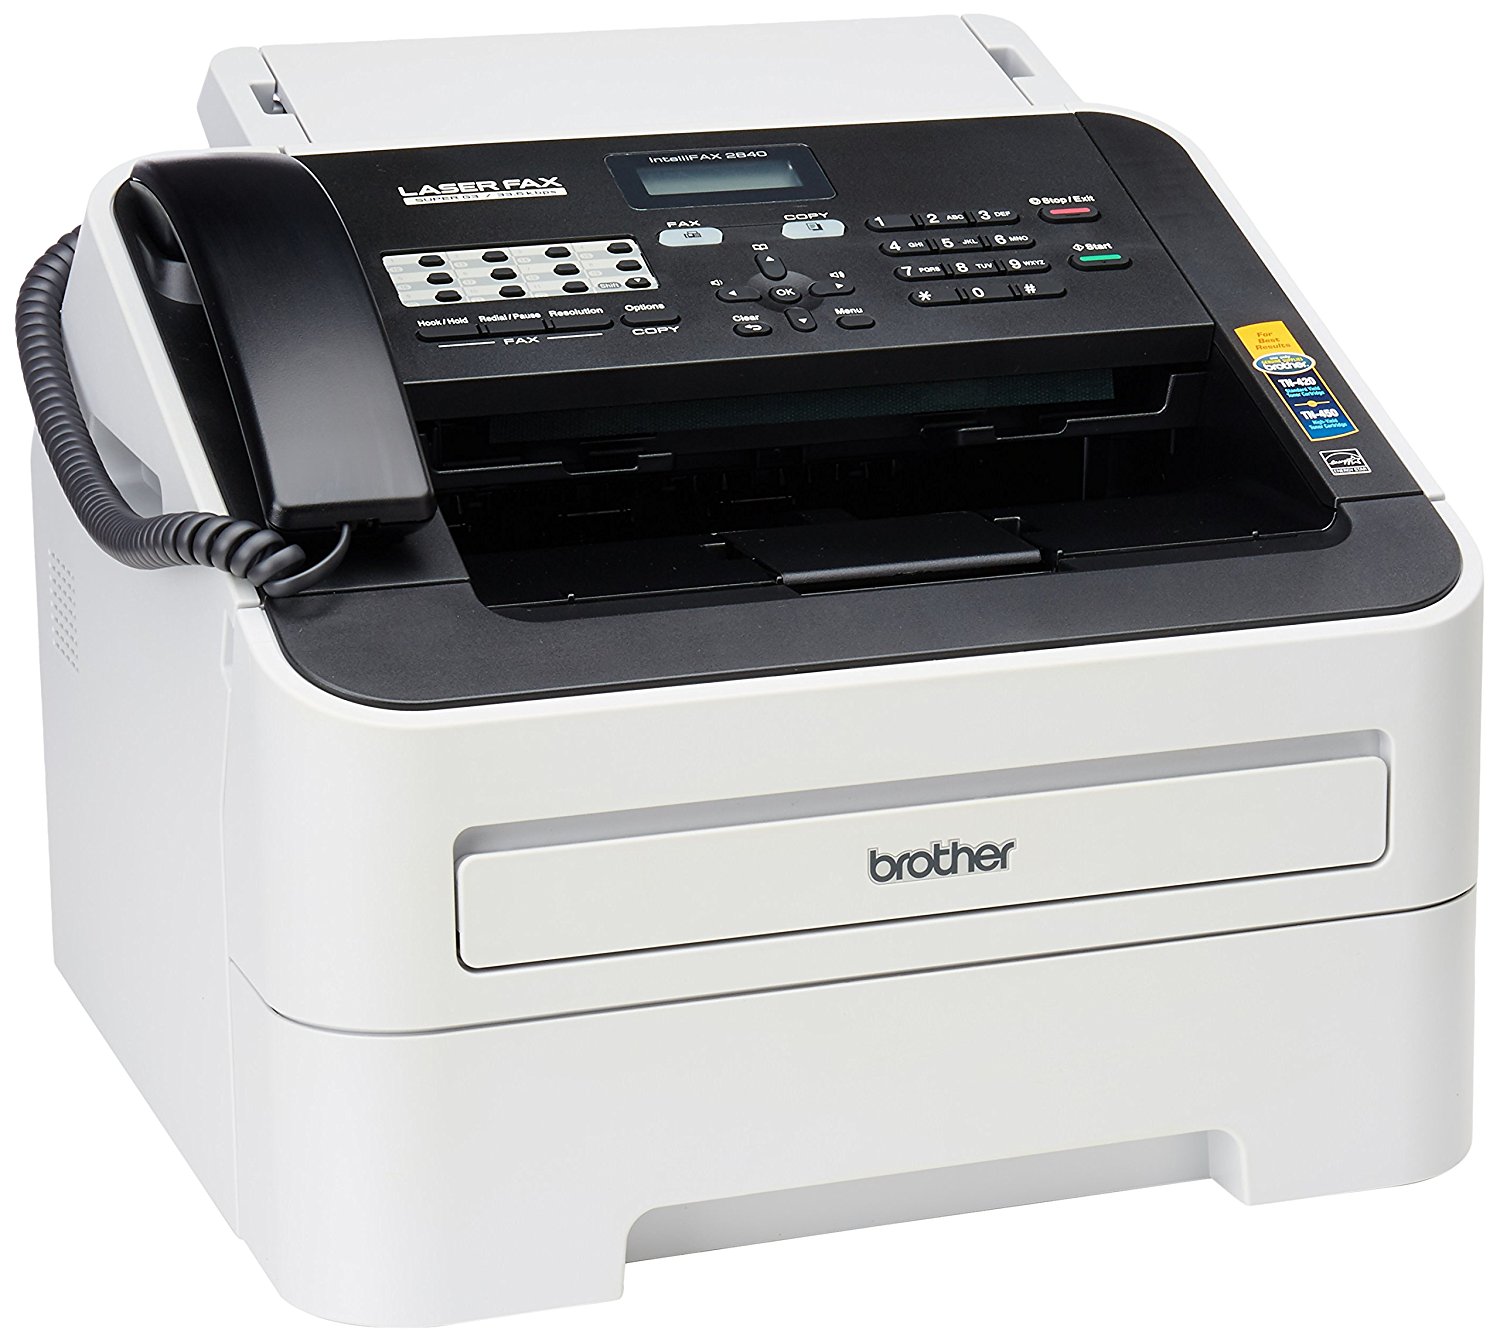 Brother Printer Máquina de fax láser monocromo de alta ...